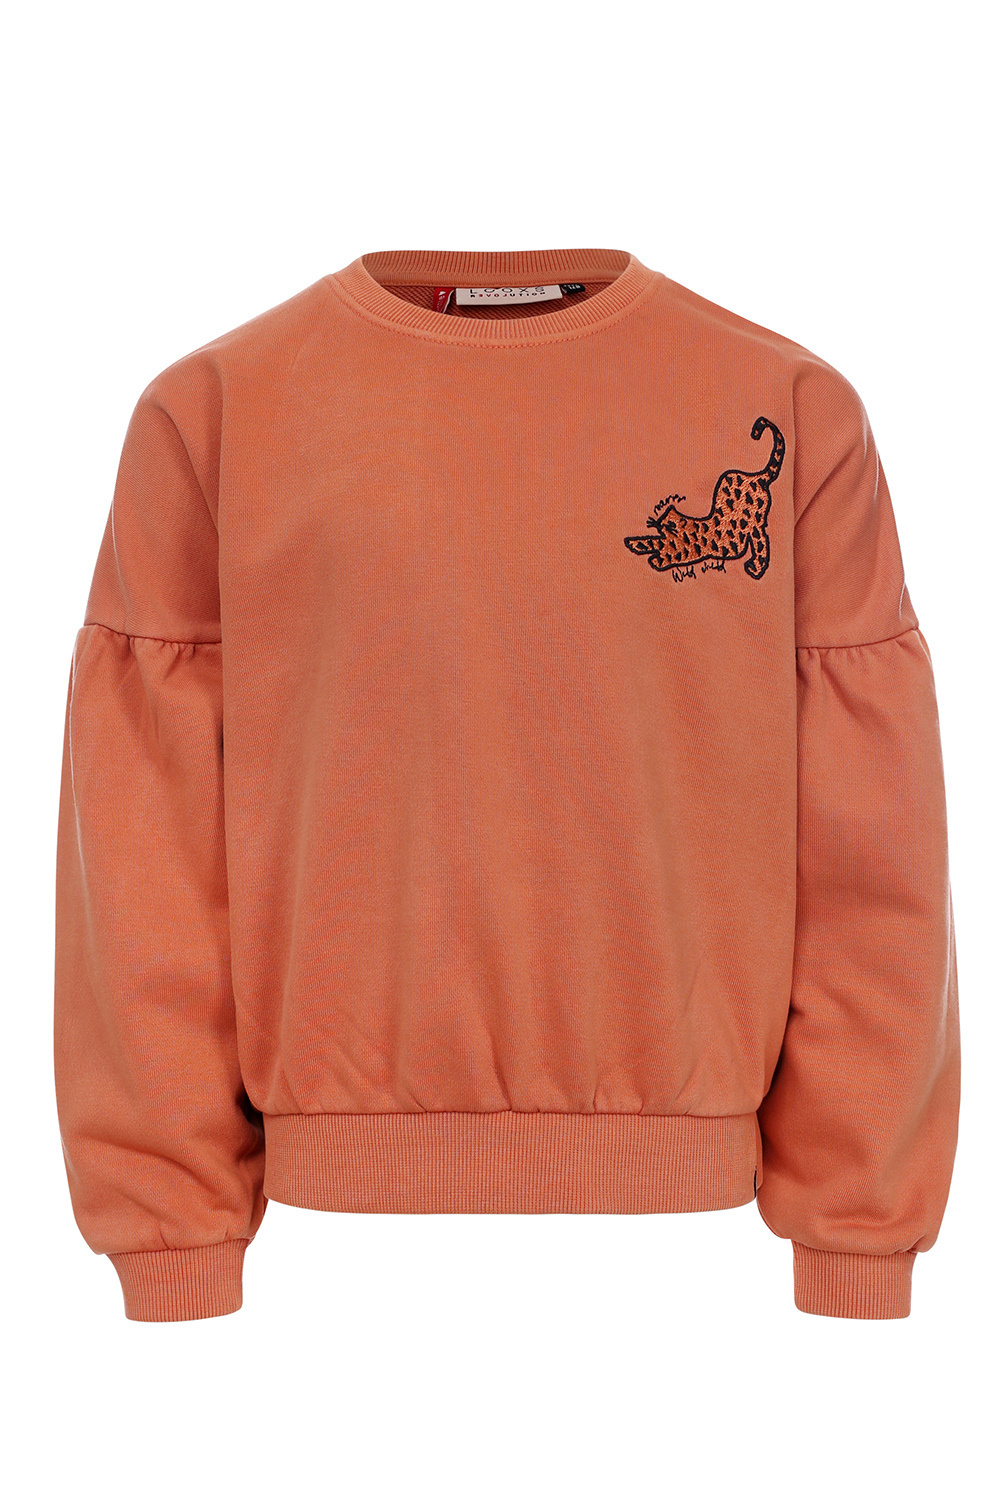 Looxs Revolution 2331-7327-382 Meisjes Sweater/Vest - Maat 128 - Warm Orange van